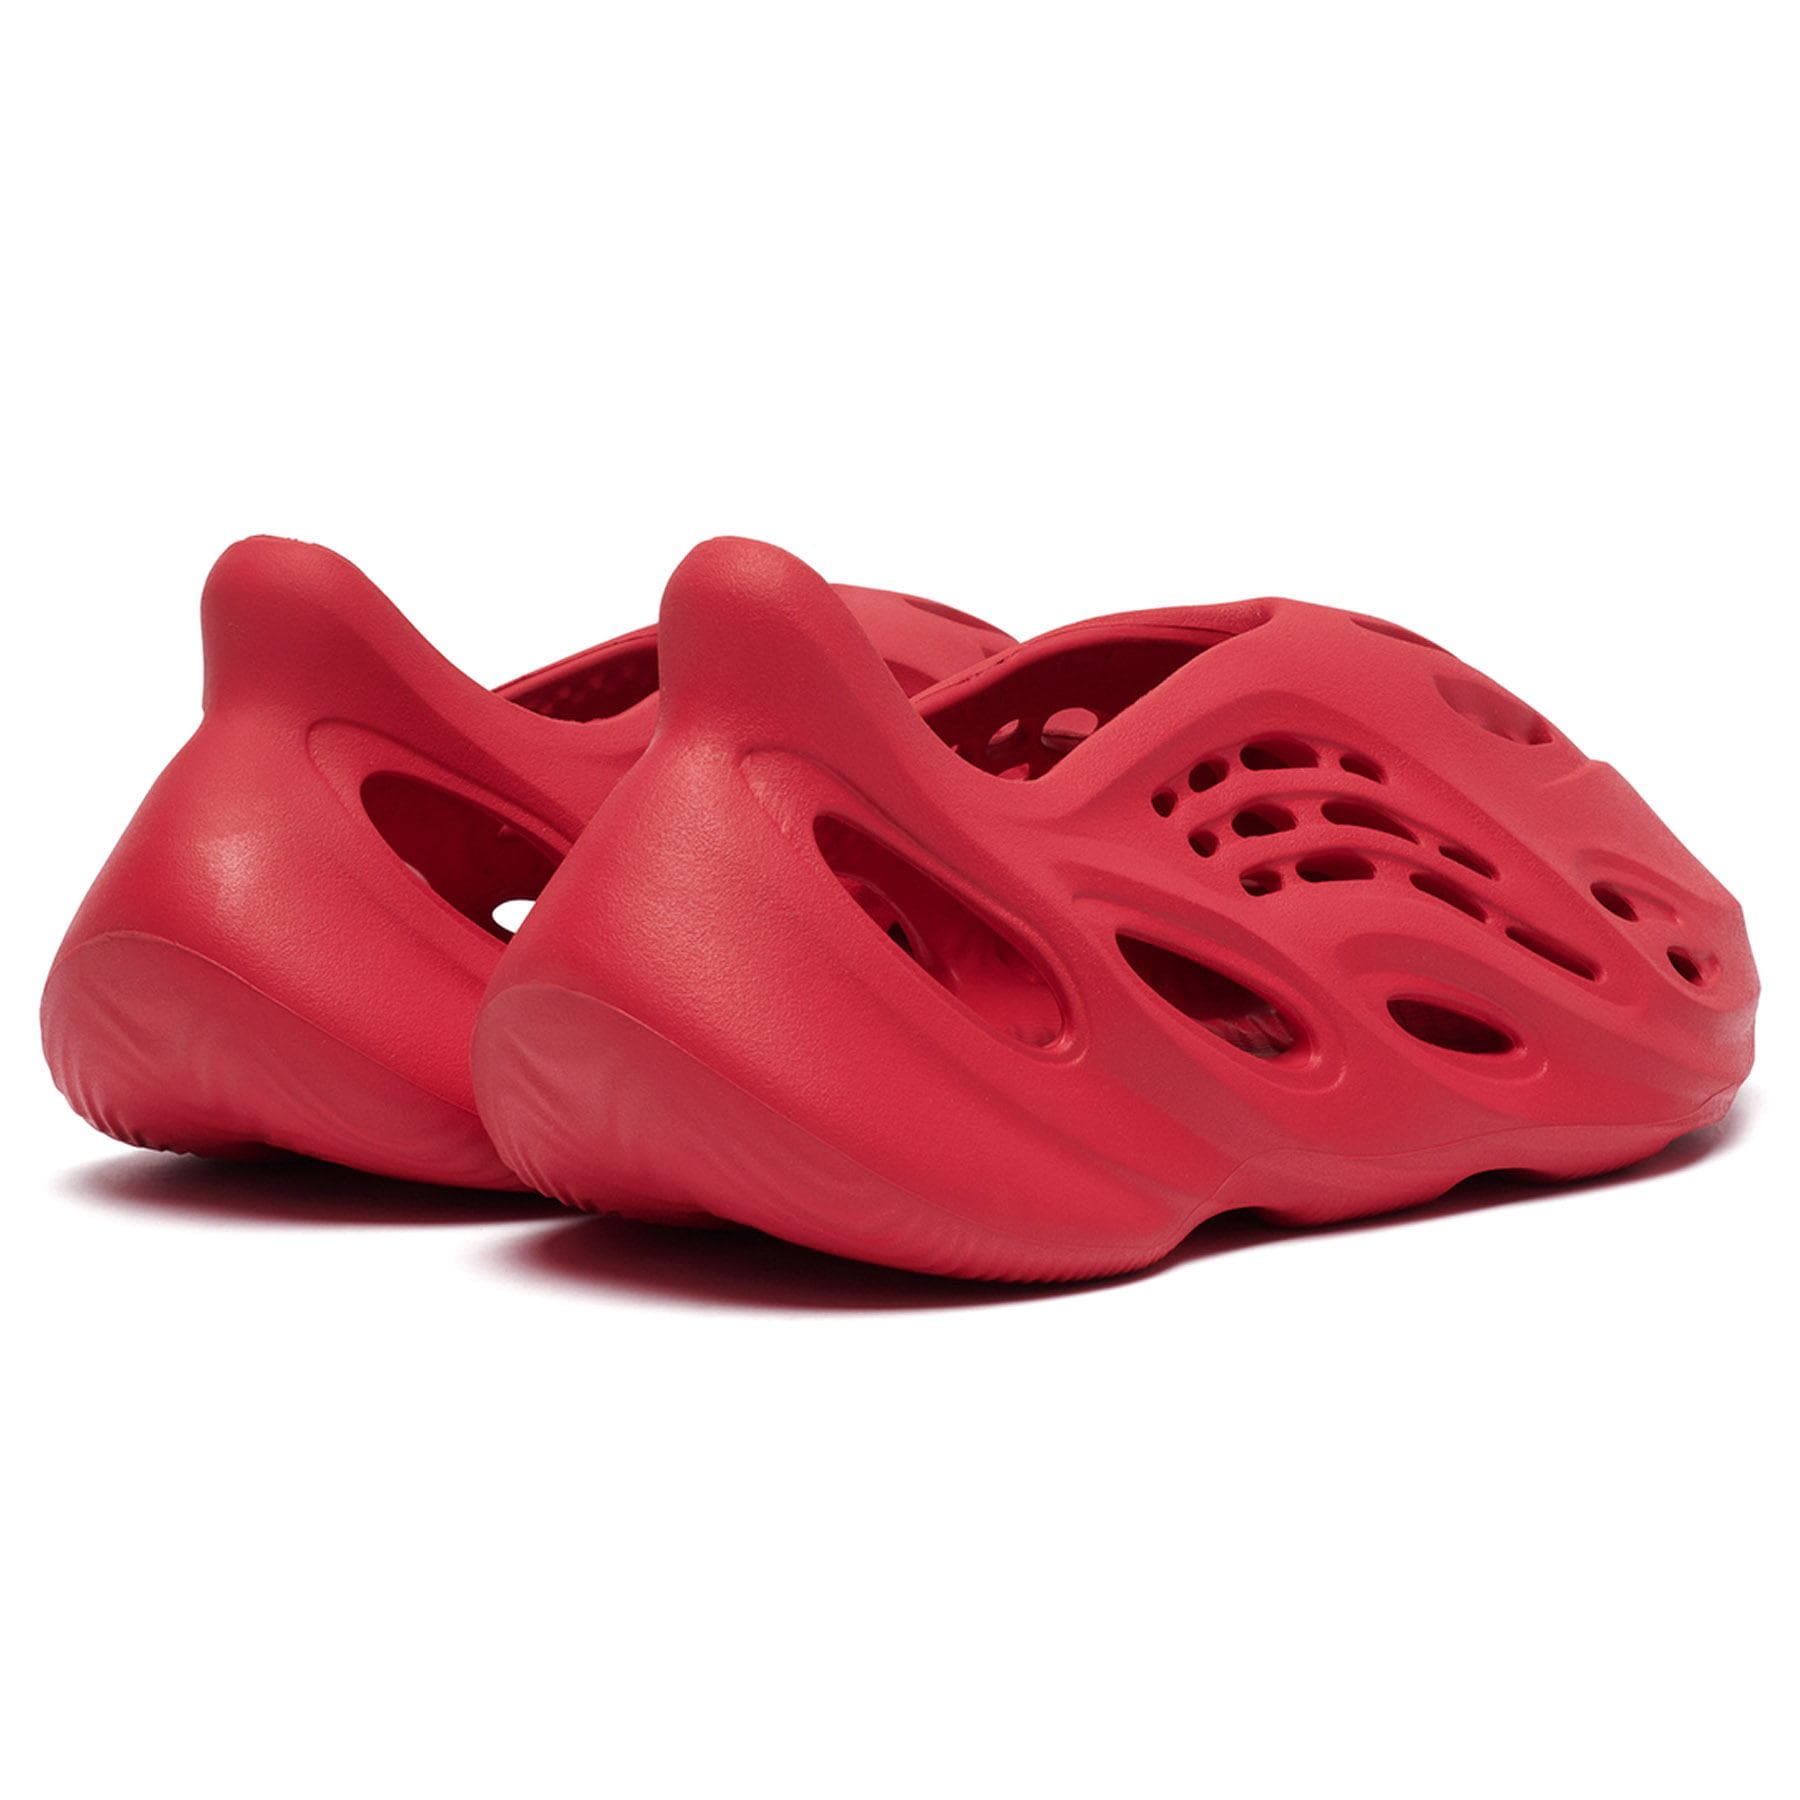 adidas Yeezy Foam Runner 'Vermilion' — Kick Game